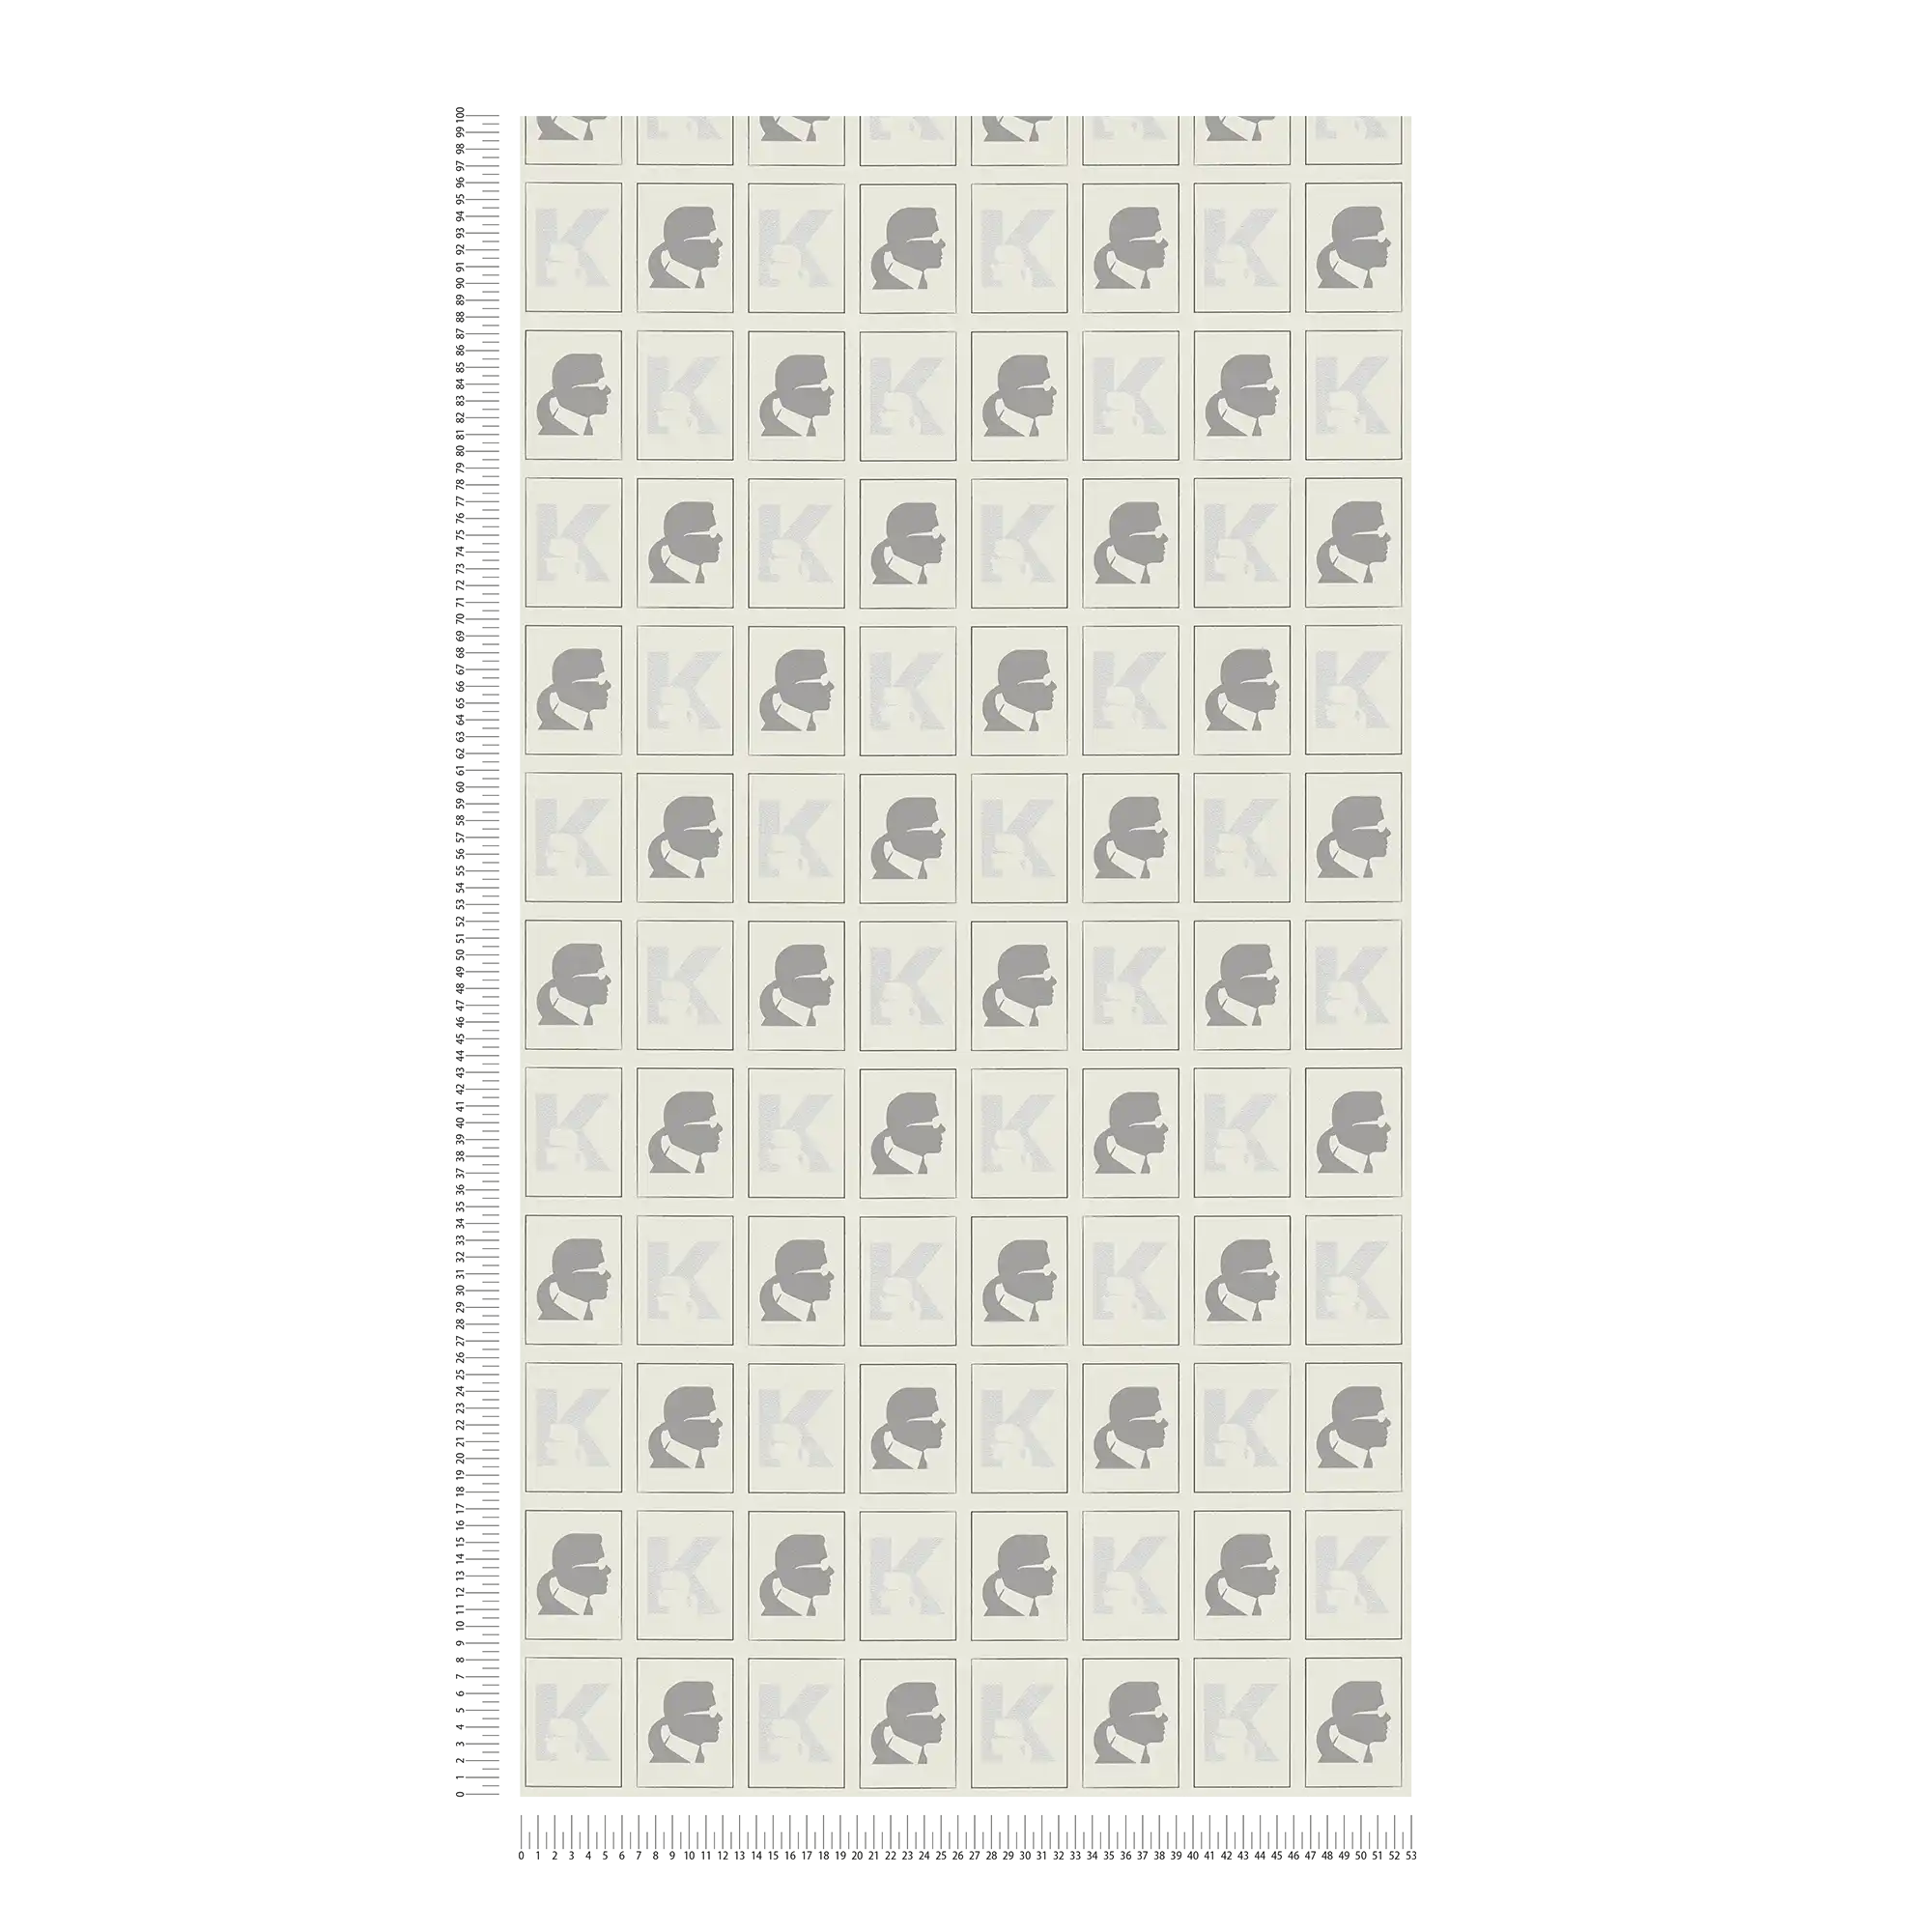             Papel pintado de tejido no tejido Karl LAGERFELD con diseño de perfiles - gris, negro
        